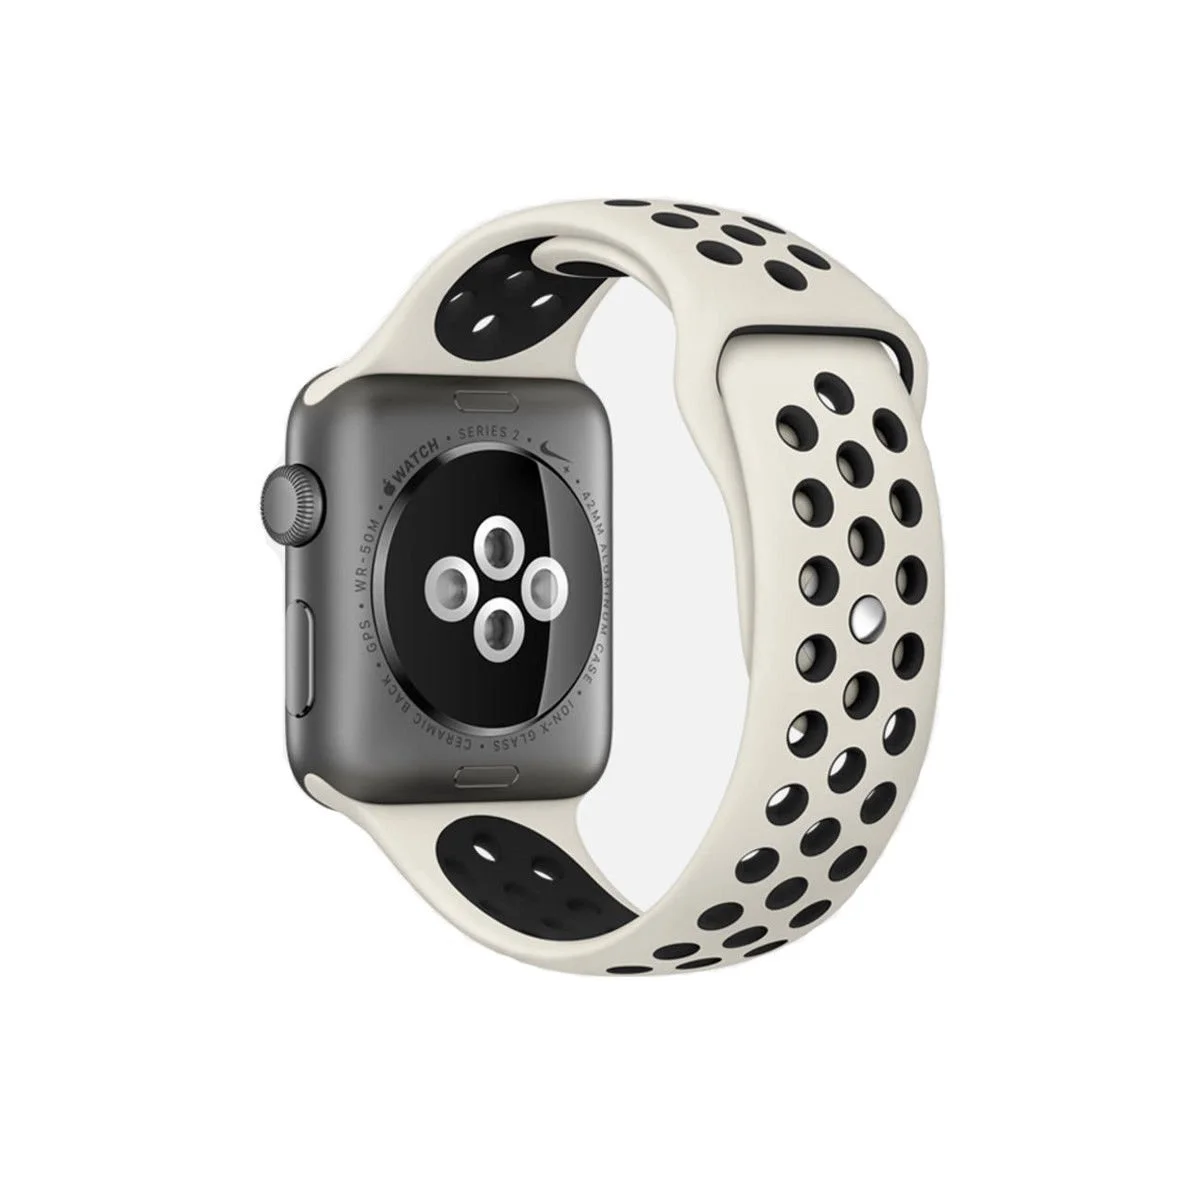 Řemínek SPORT pro Apple Watch Series 1/2/3 (42mm) - Anticky bílý/Černý